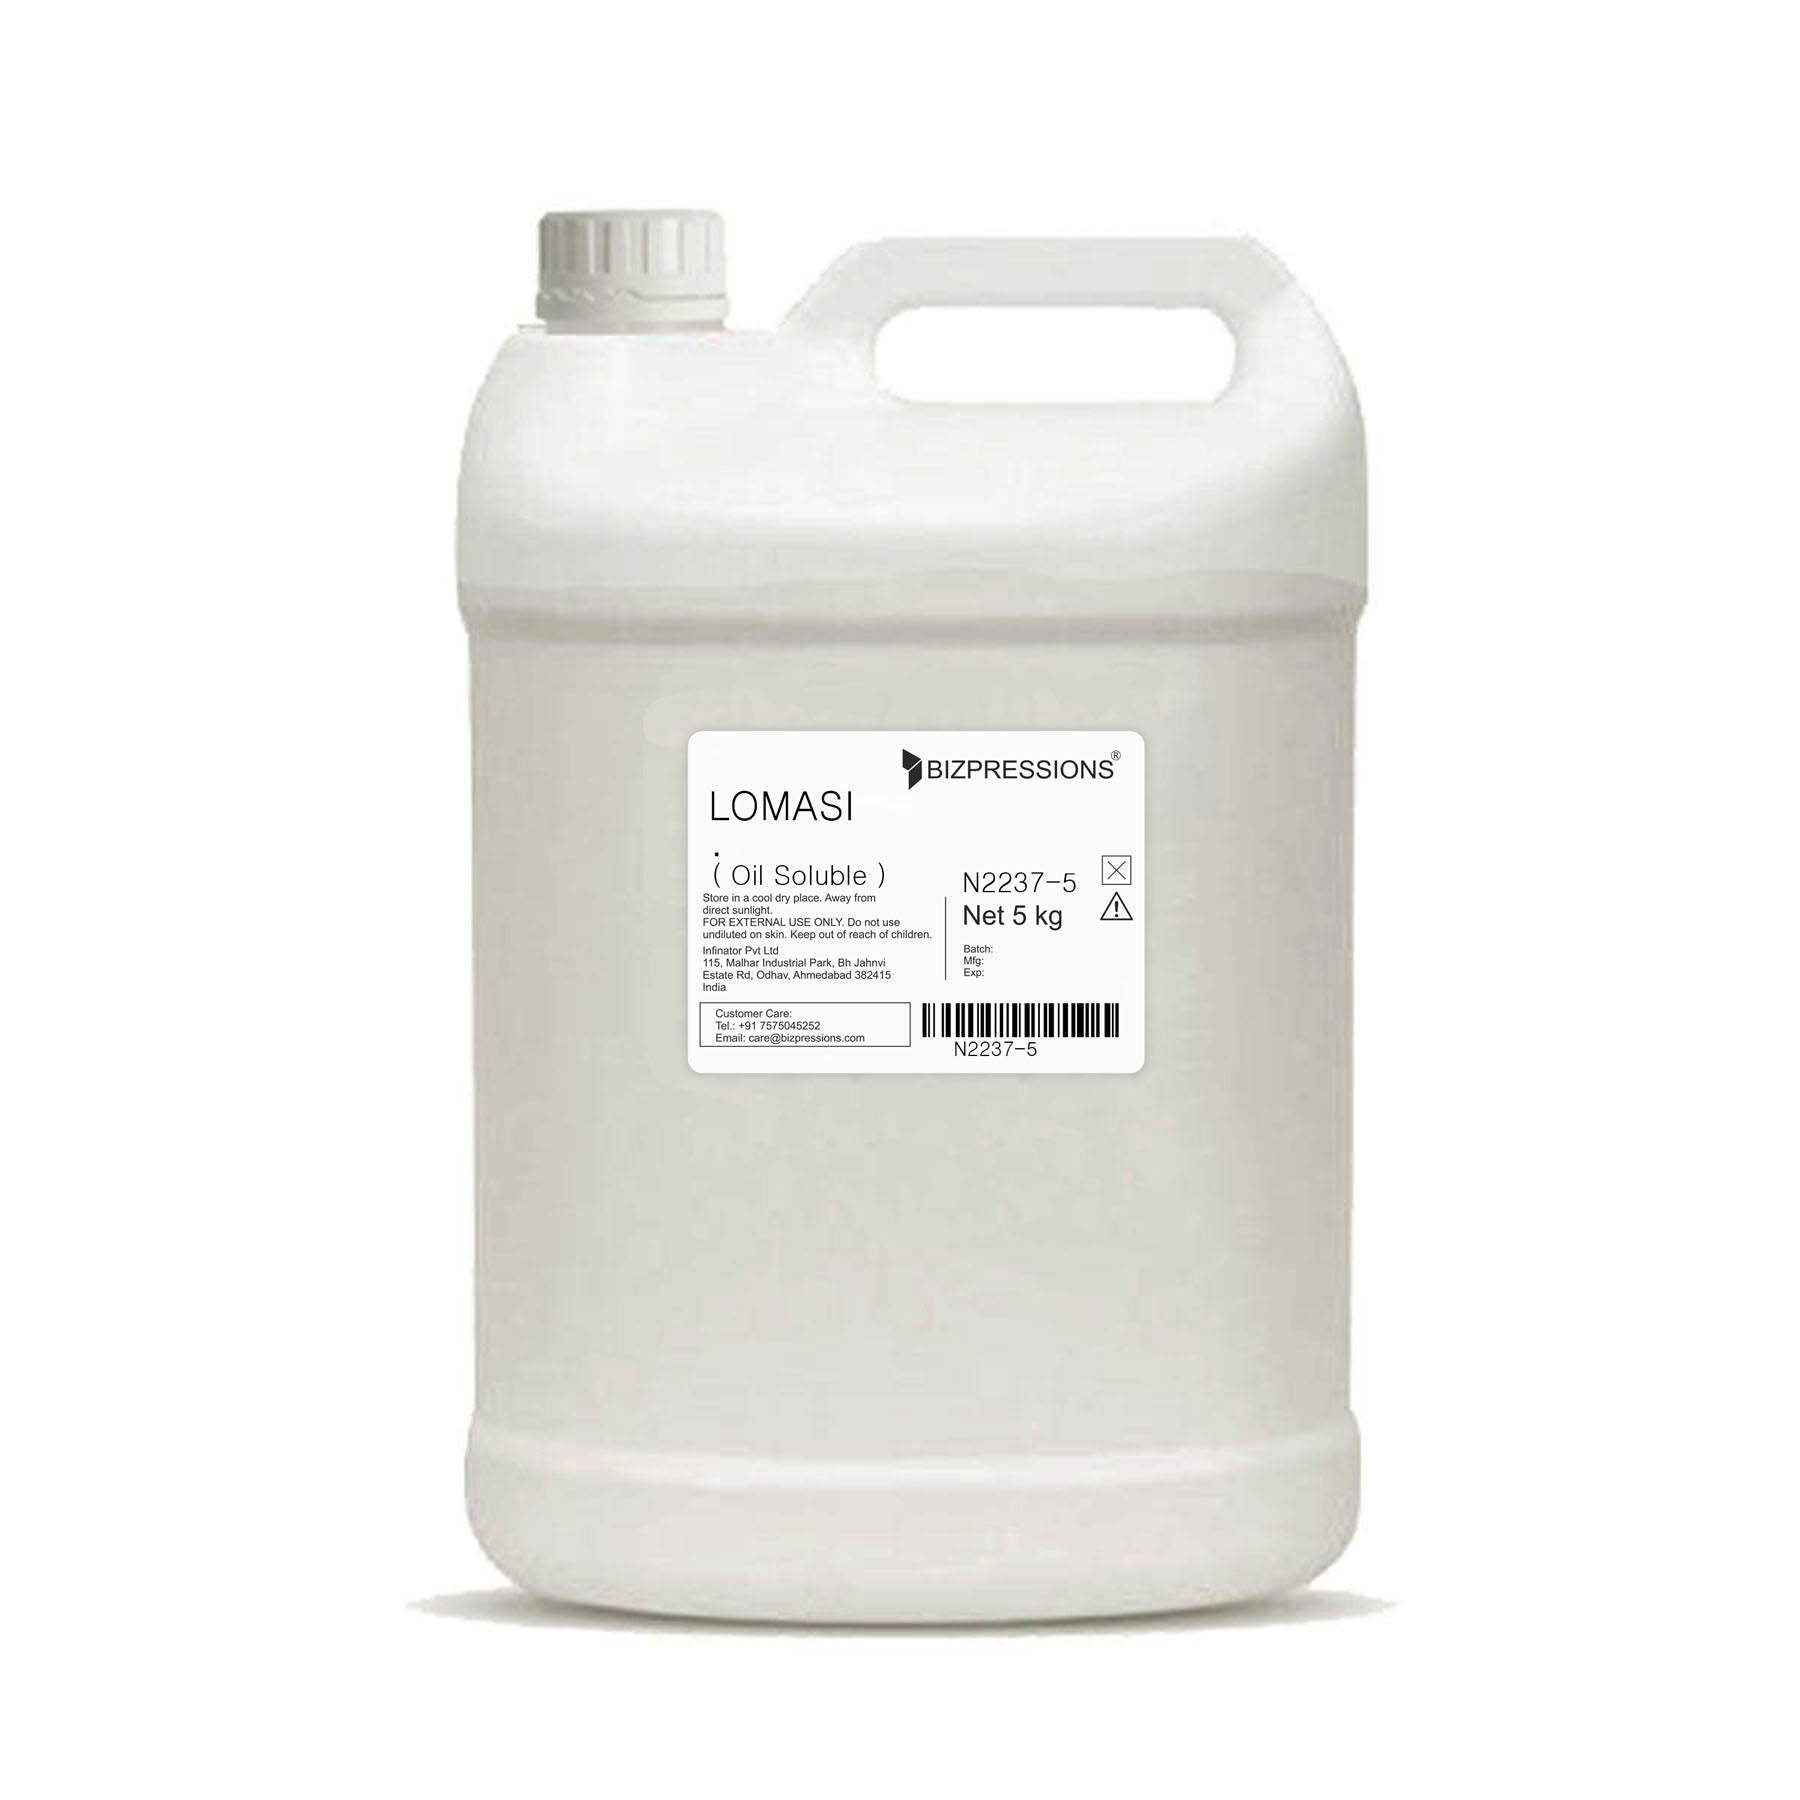 LOMASI - Fragrance ( Oil Soluble ) - 5 kg